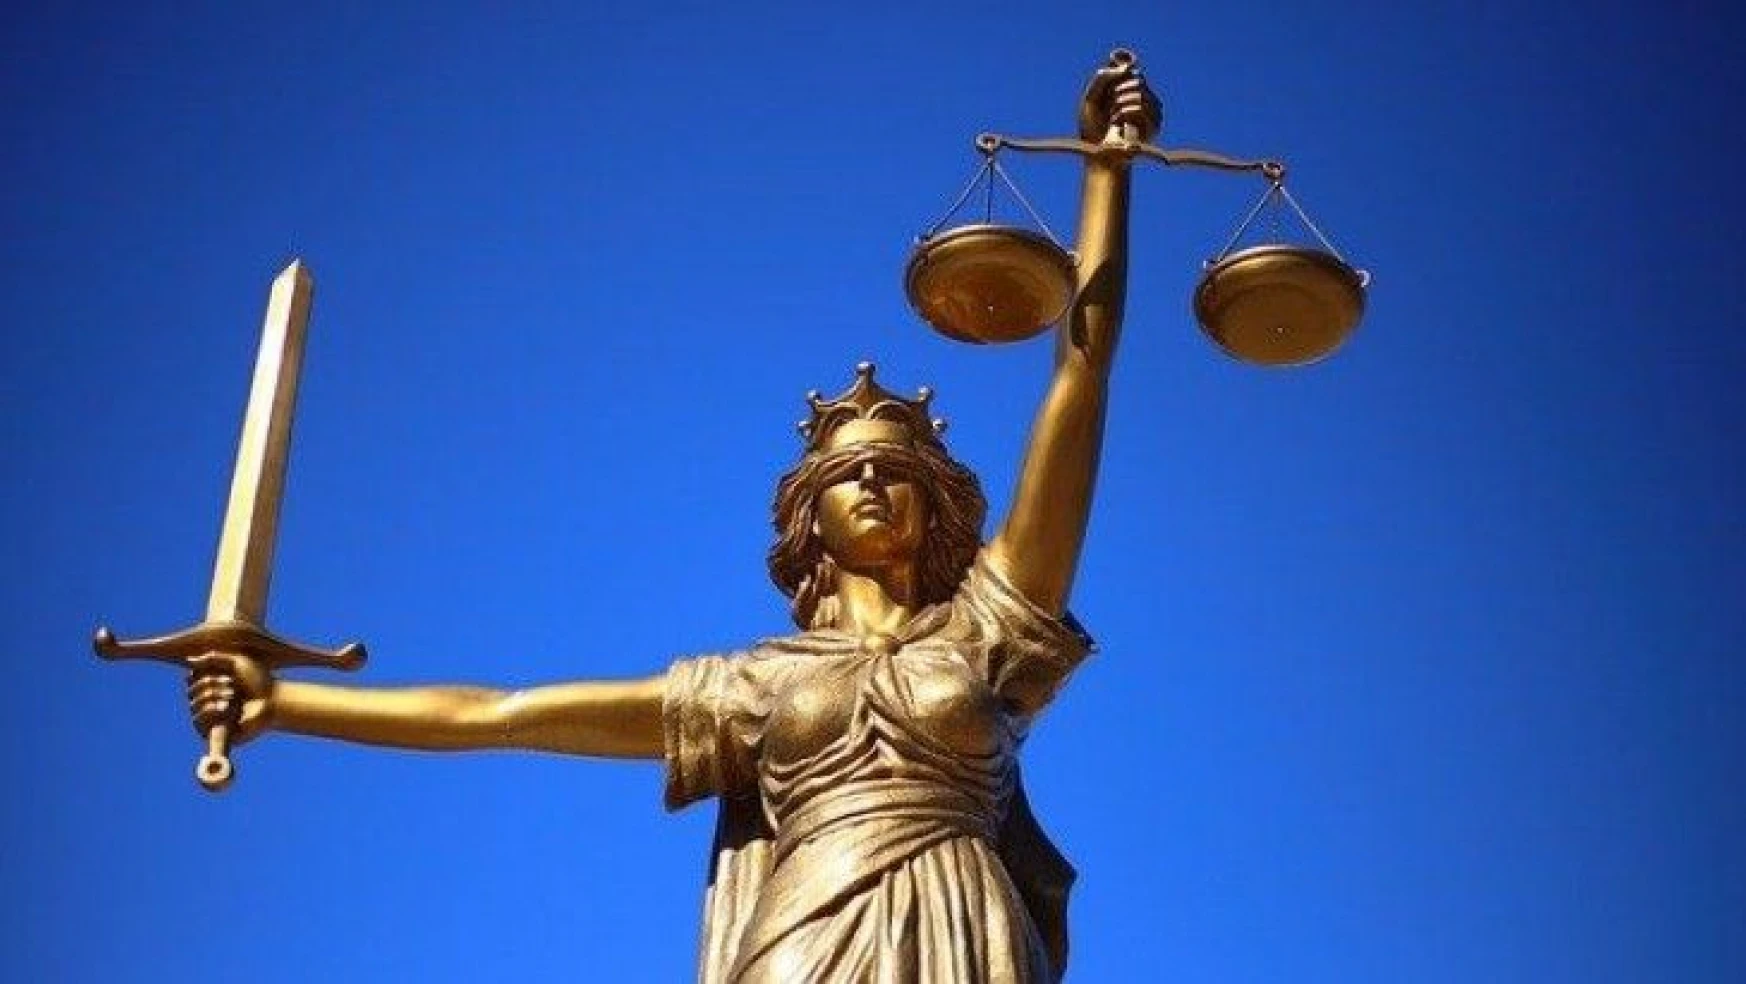 Yeni baro için kamu avukatlarına baskı mı yapılıyor?